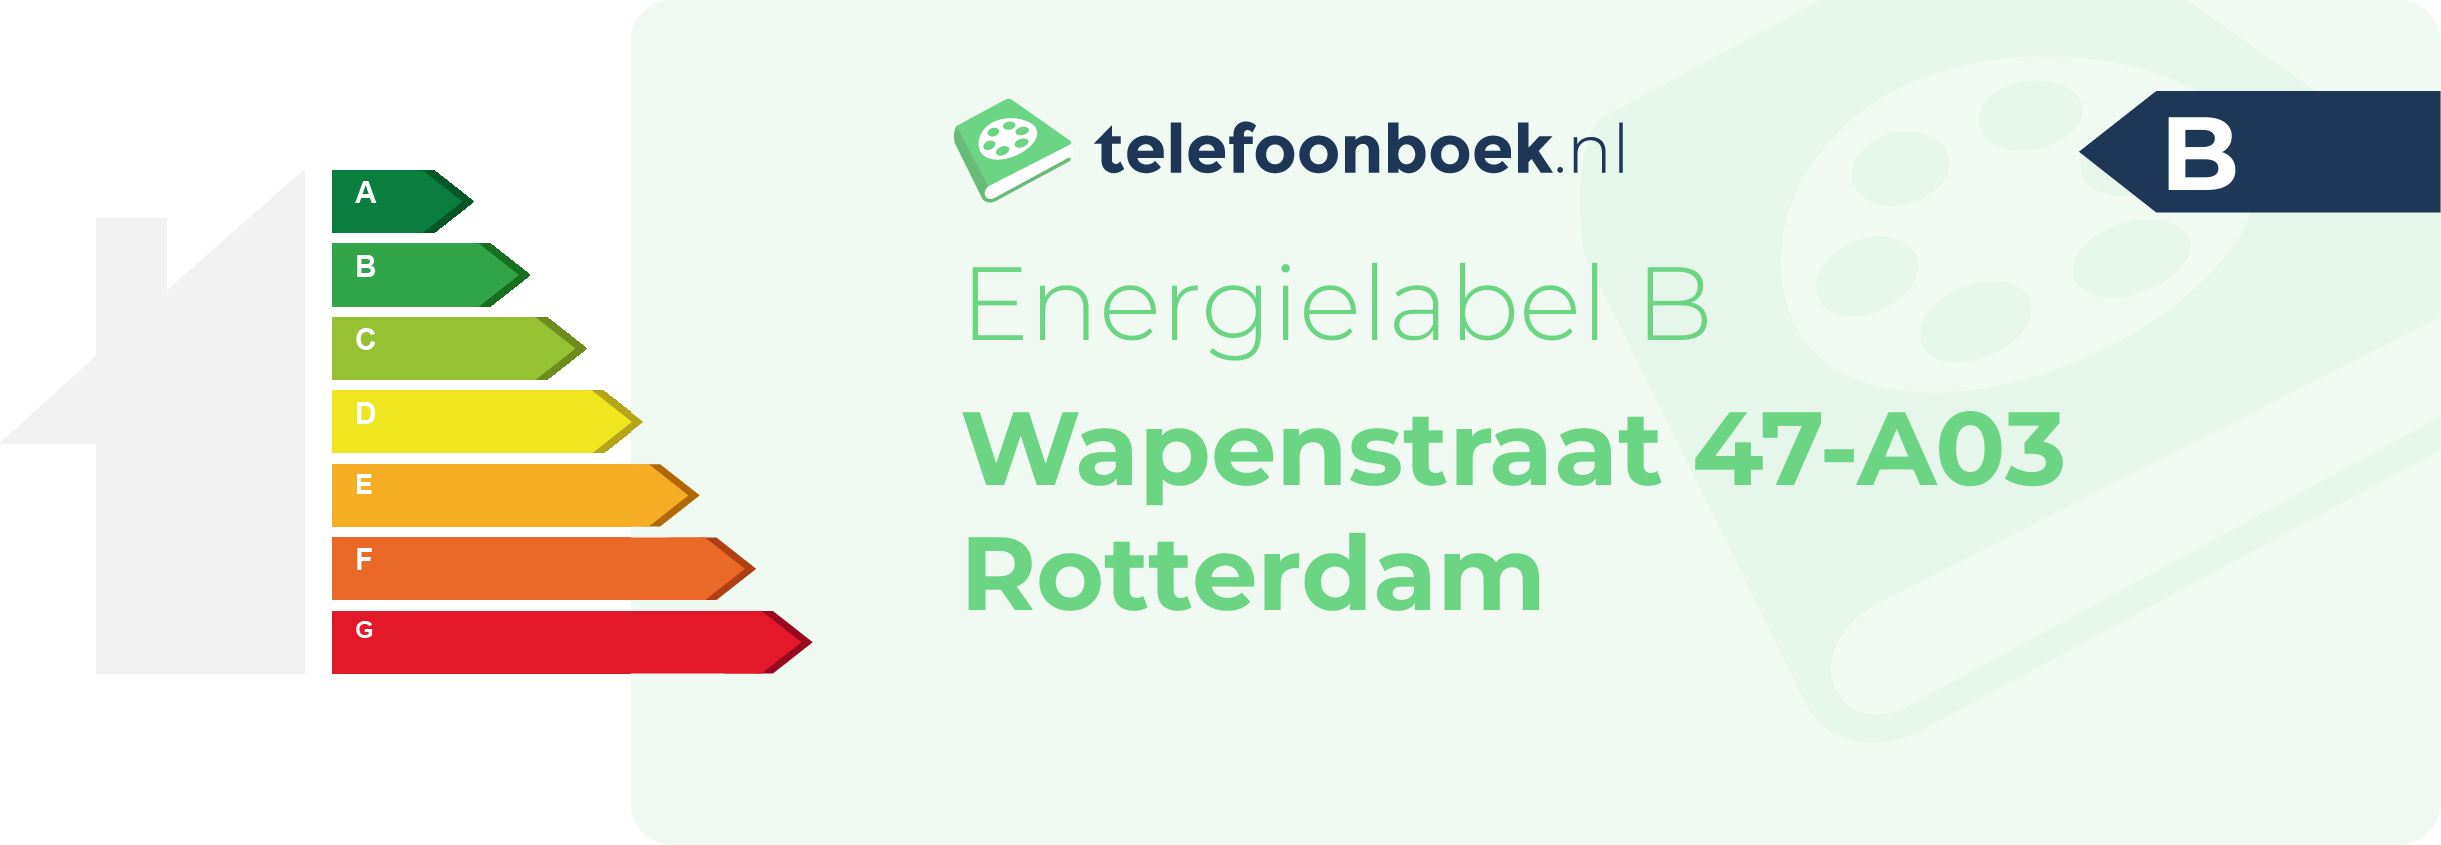 Energielabel Wapenstraat 47-A03 Rotterdam